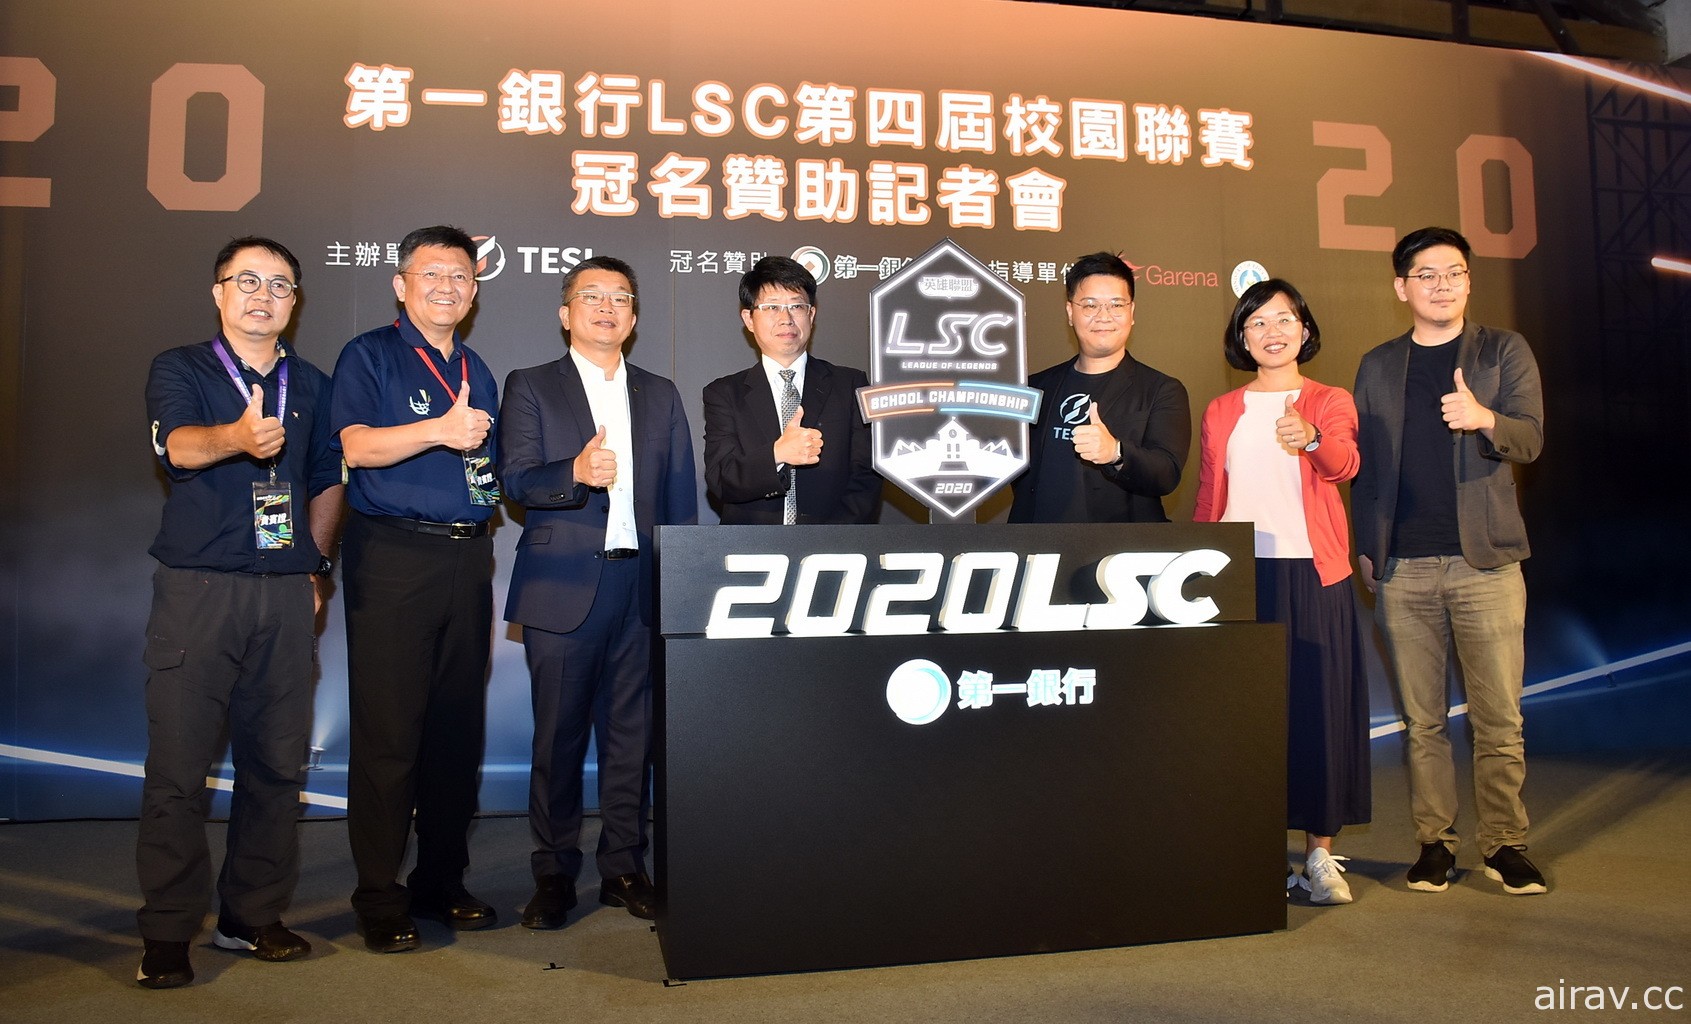 第一銀行冠名贊助《英雄聯盟》第四屆校園電競聯賽 LSC 期待培養更多台灣電競人才